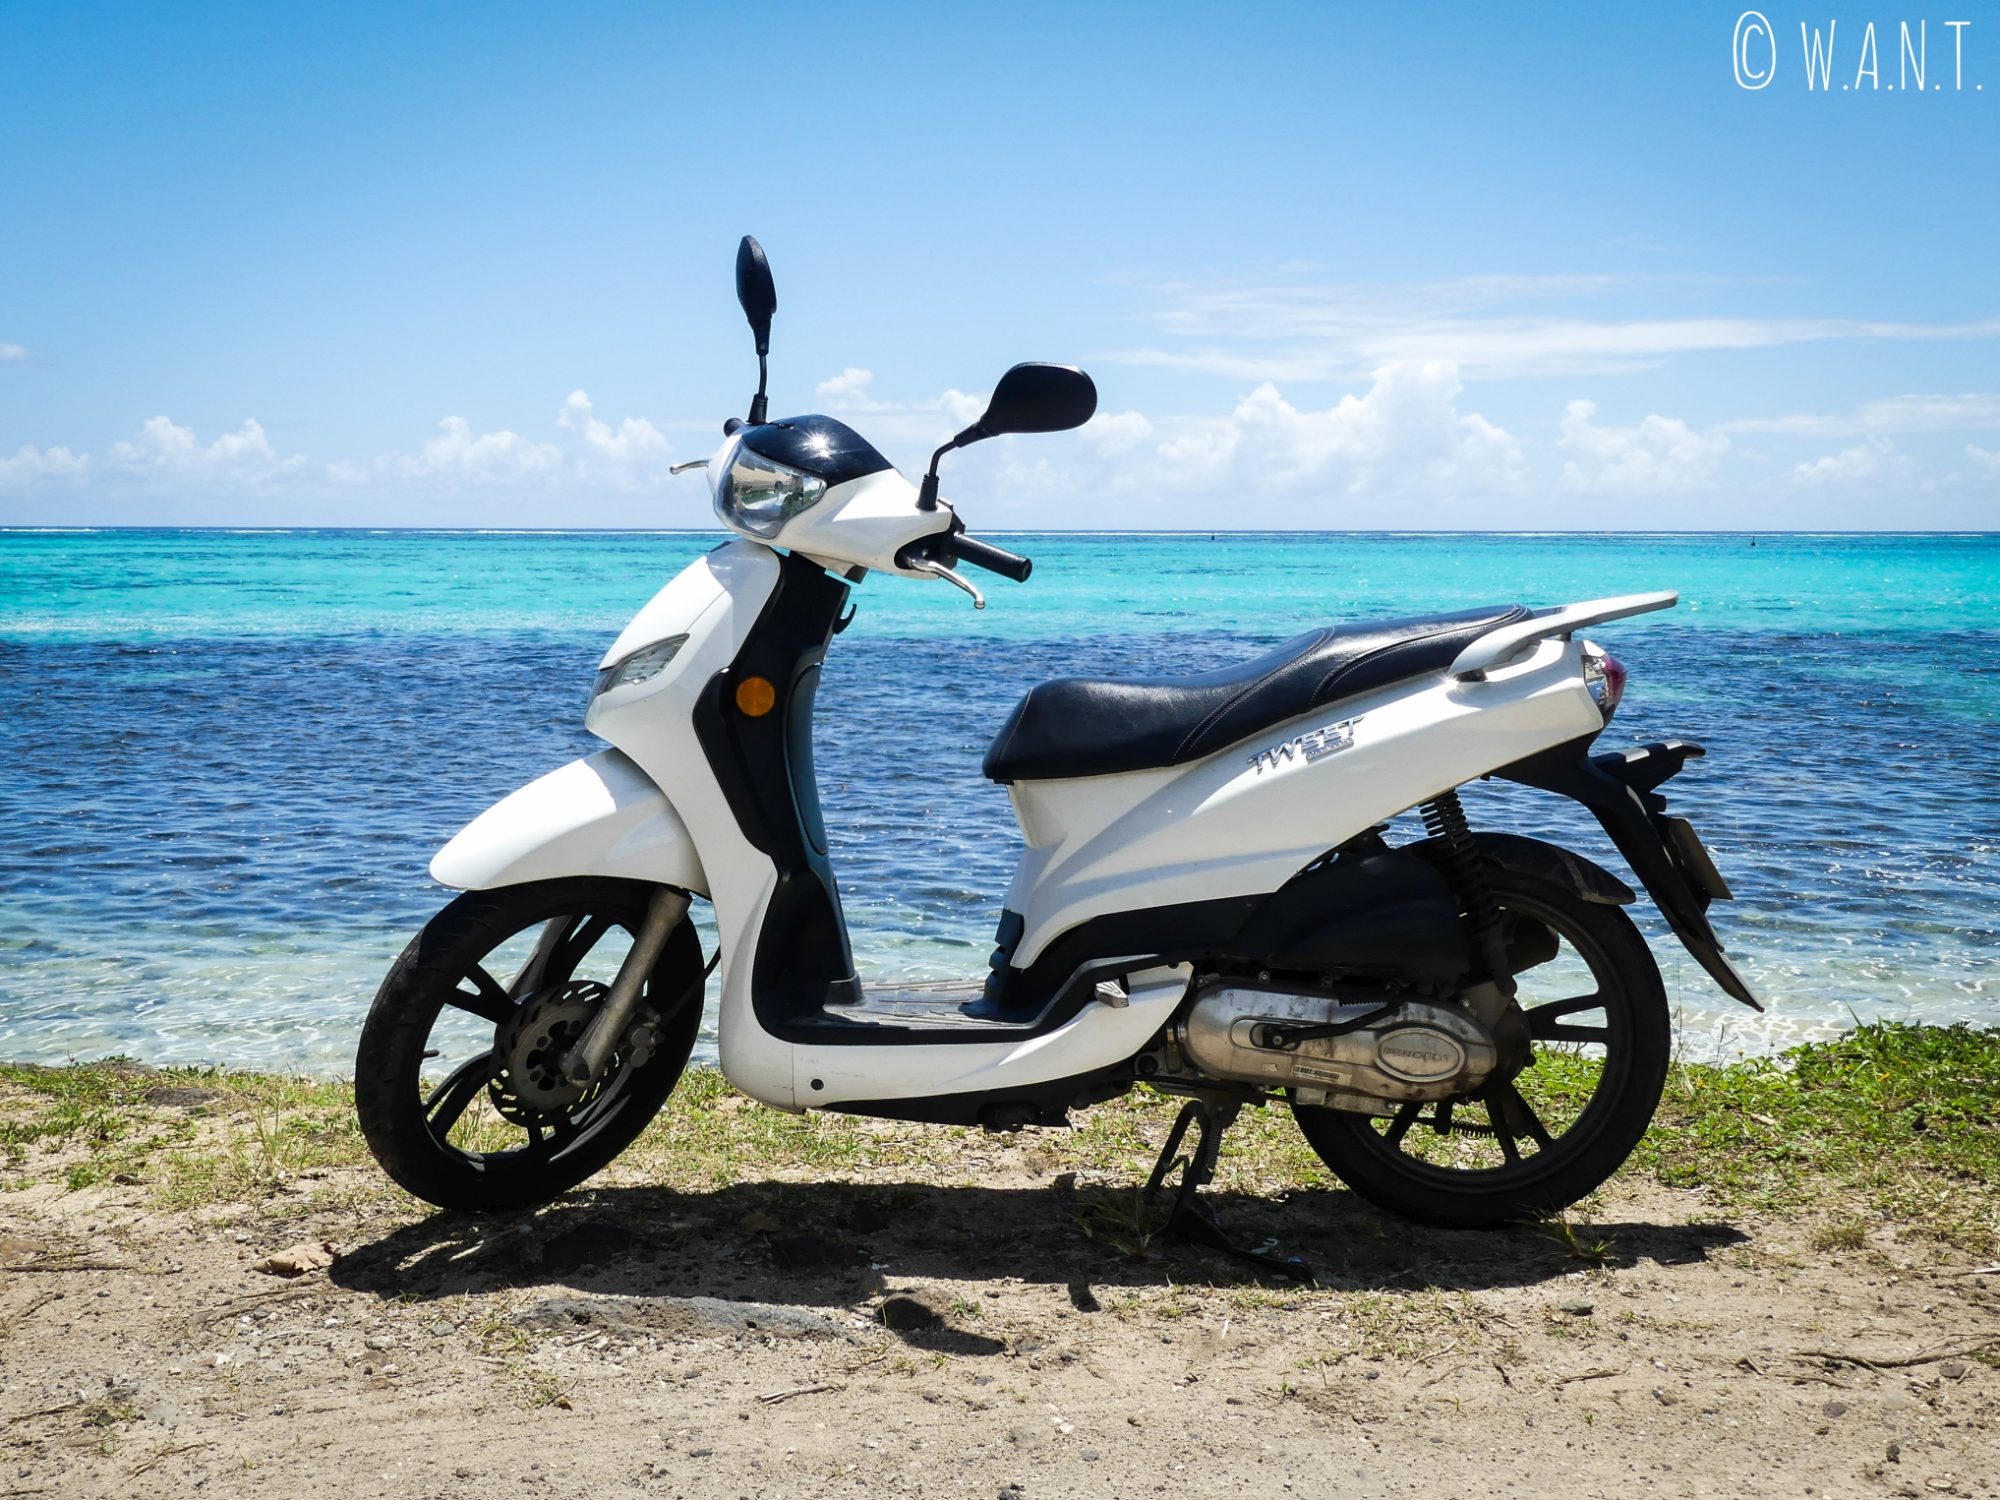 Le scooter, le mode de transport le plus adapté à l'île de Moorea